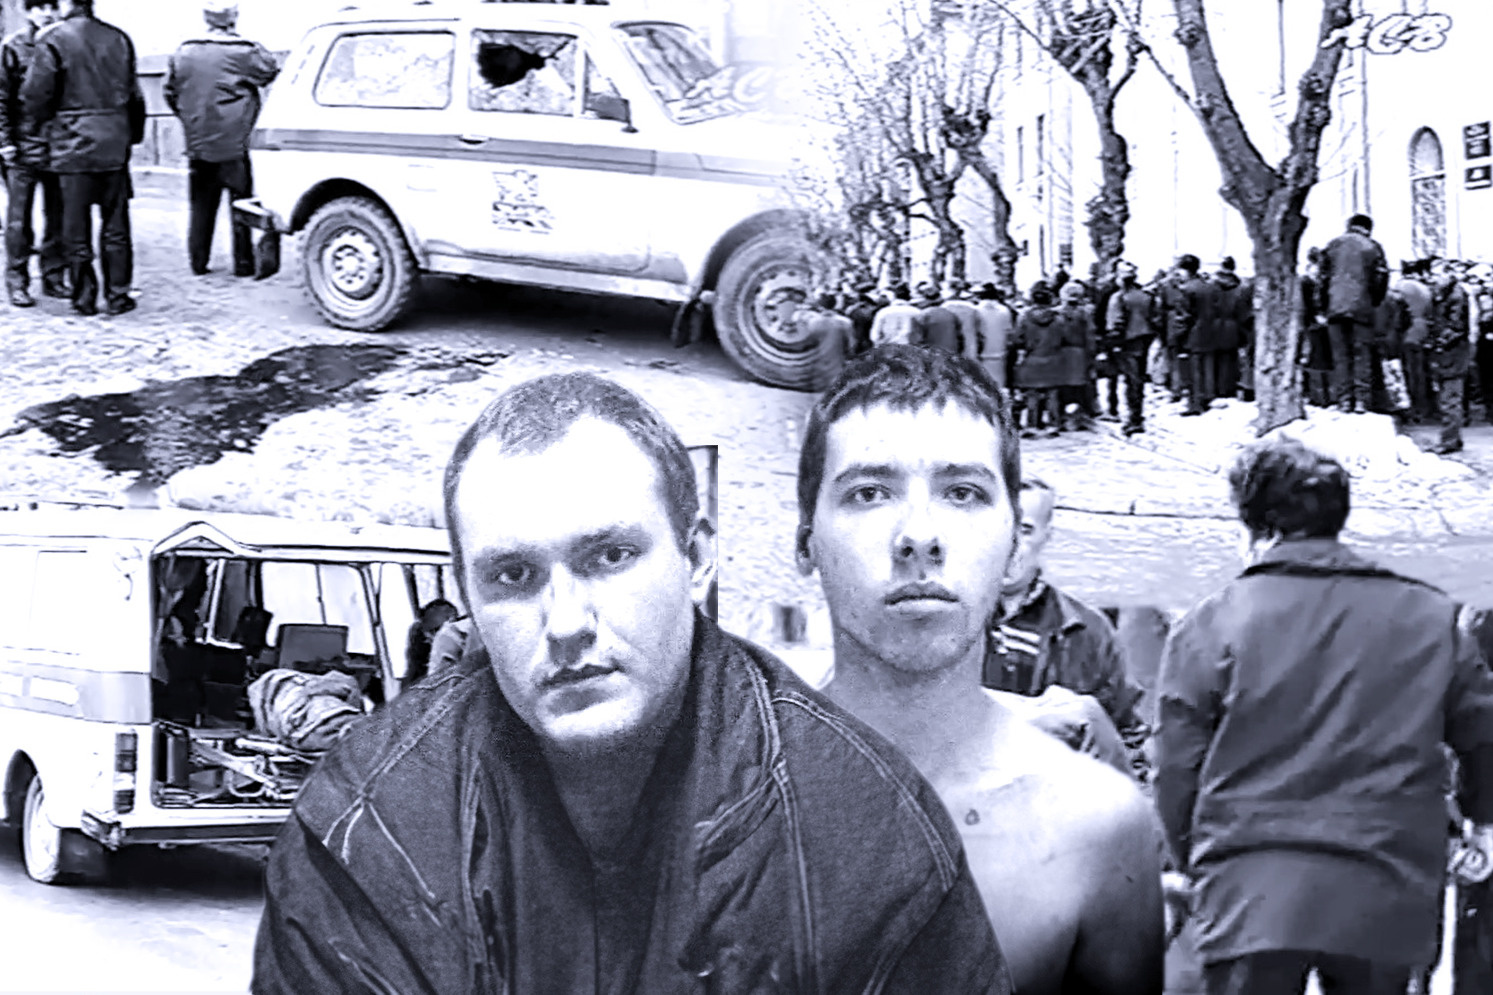 Бандитский Екатеринбург: вспоминаем самое кровавое нападение на инкассаторов — троих расстреляли в упор